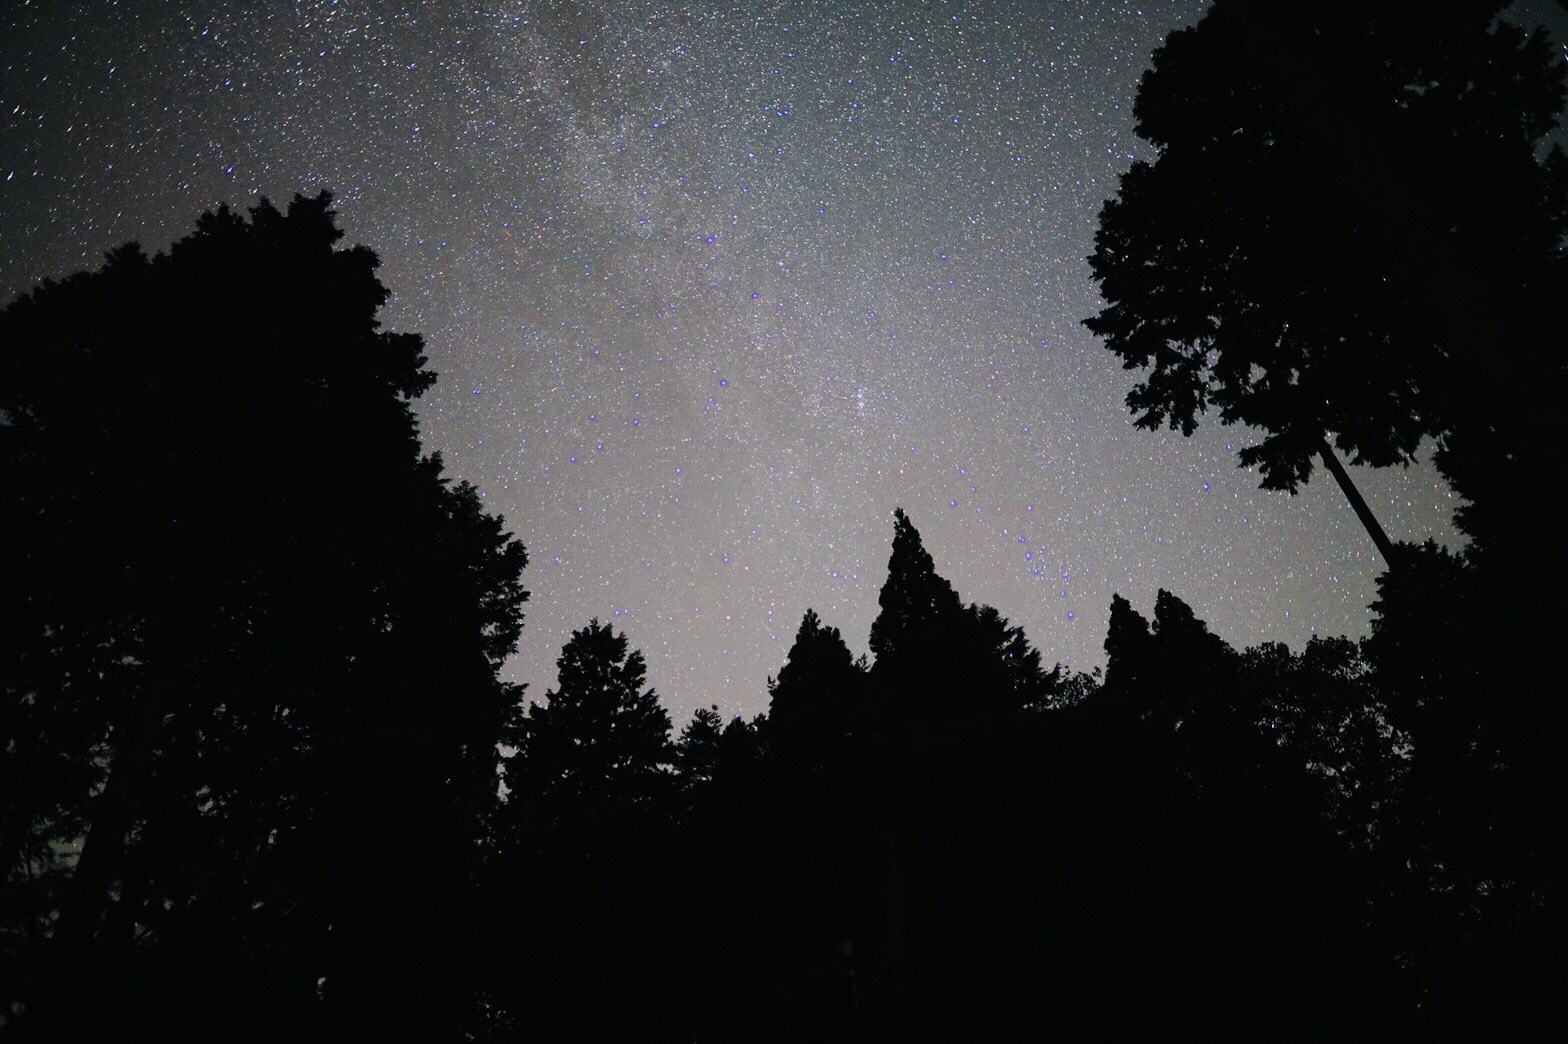 第2キャンプ場の星空の写真